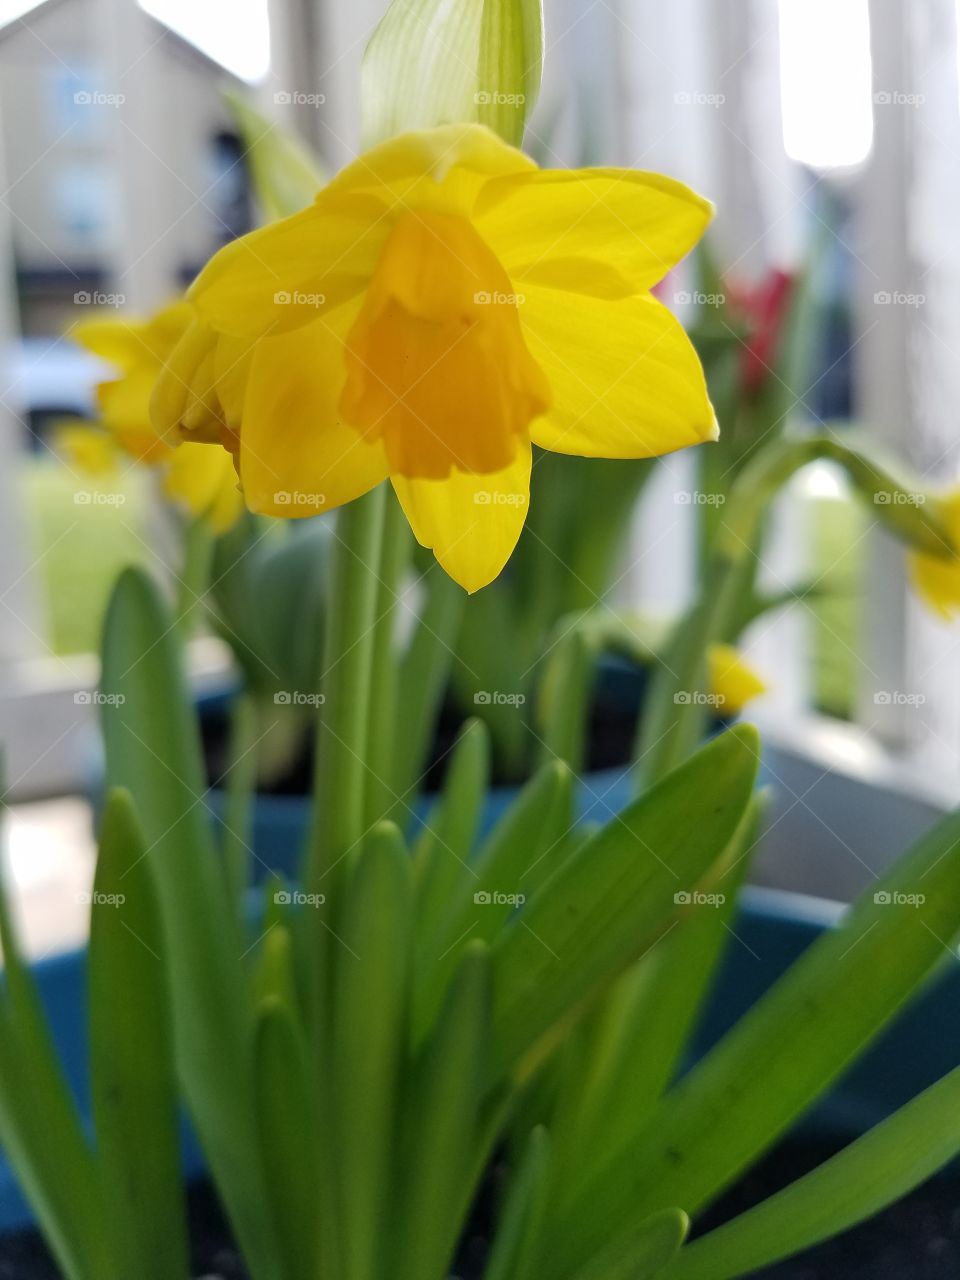 Joyful daffodils.